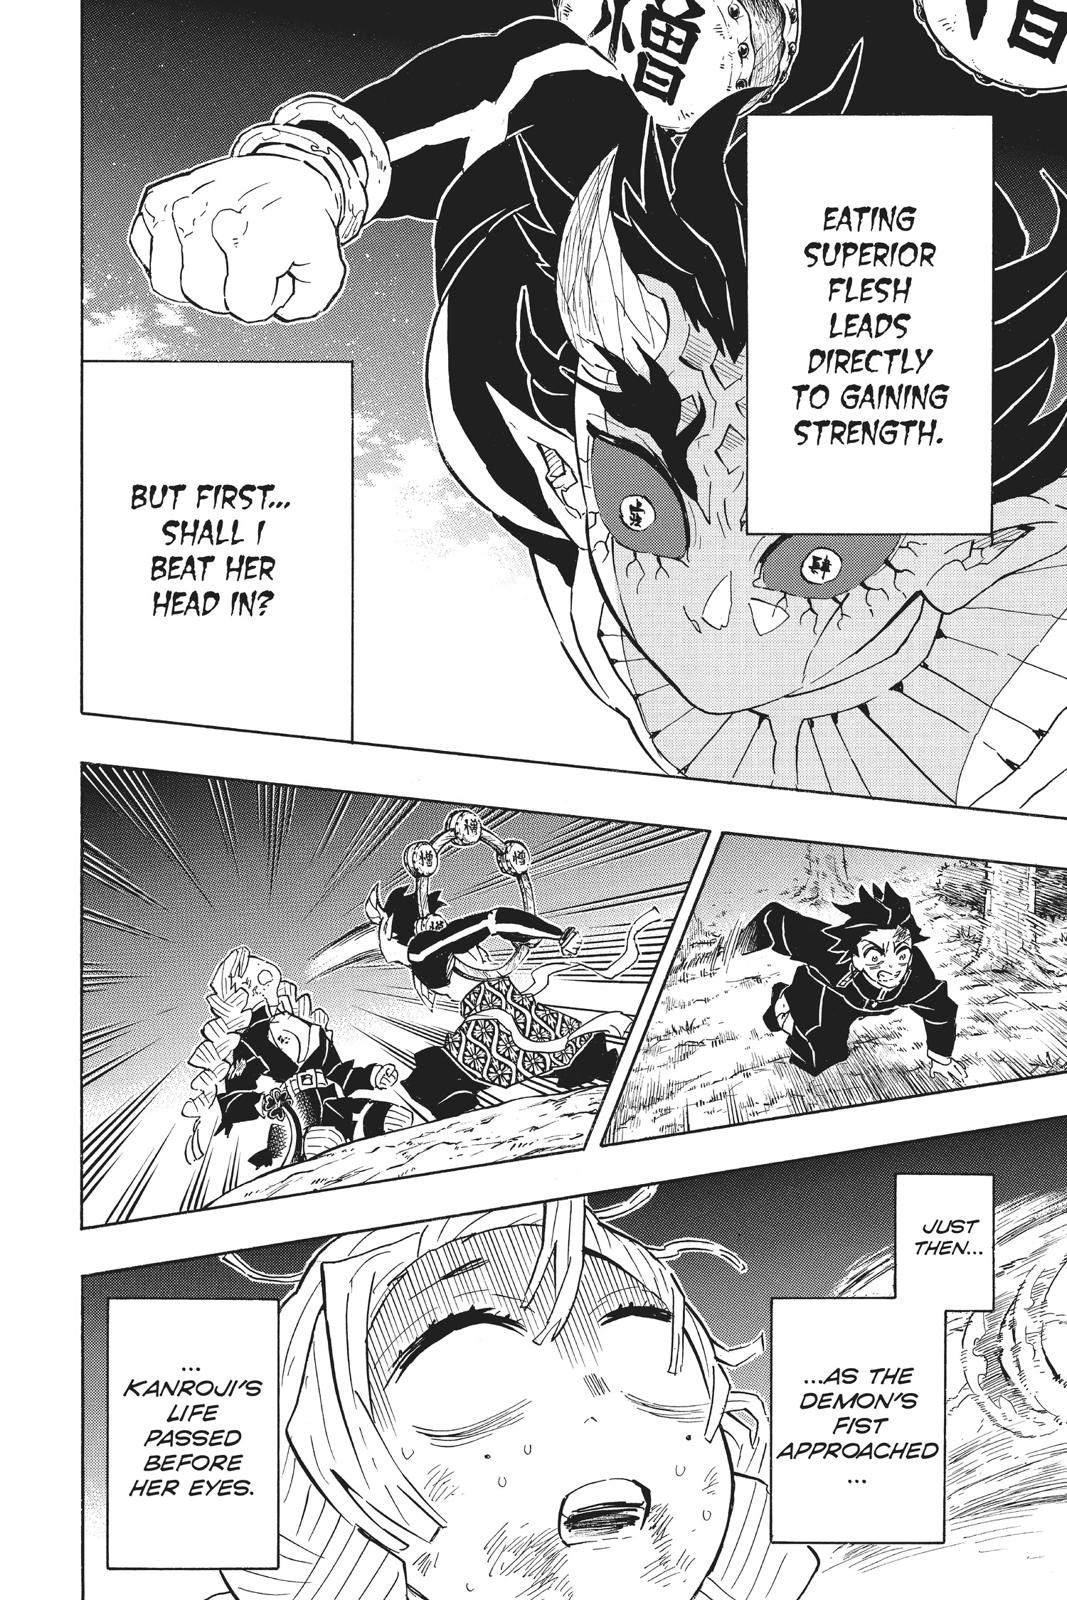 Demon Slayer Manga Manga Chapter - 123 - image 7